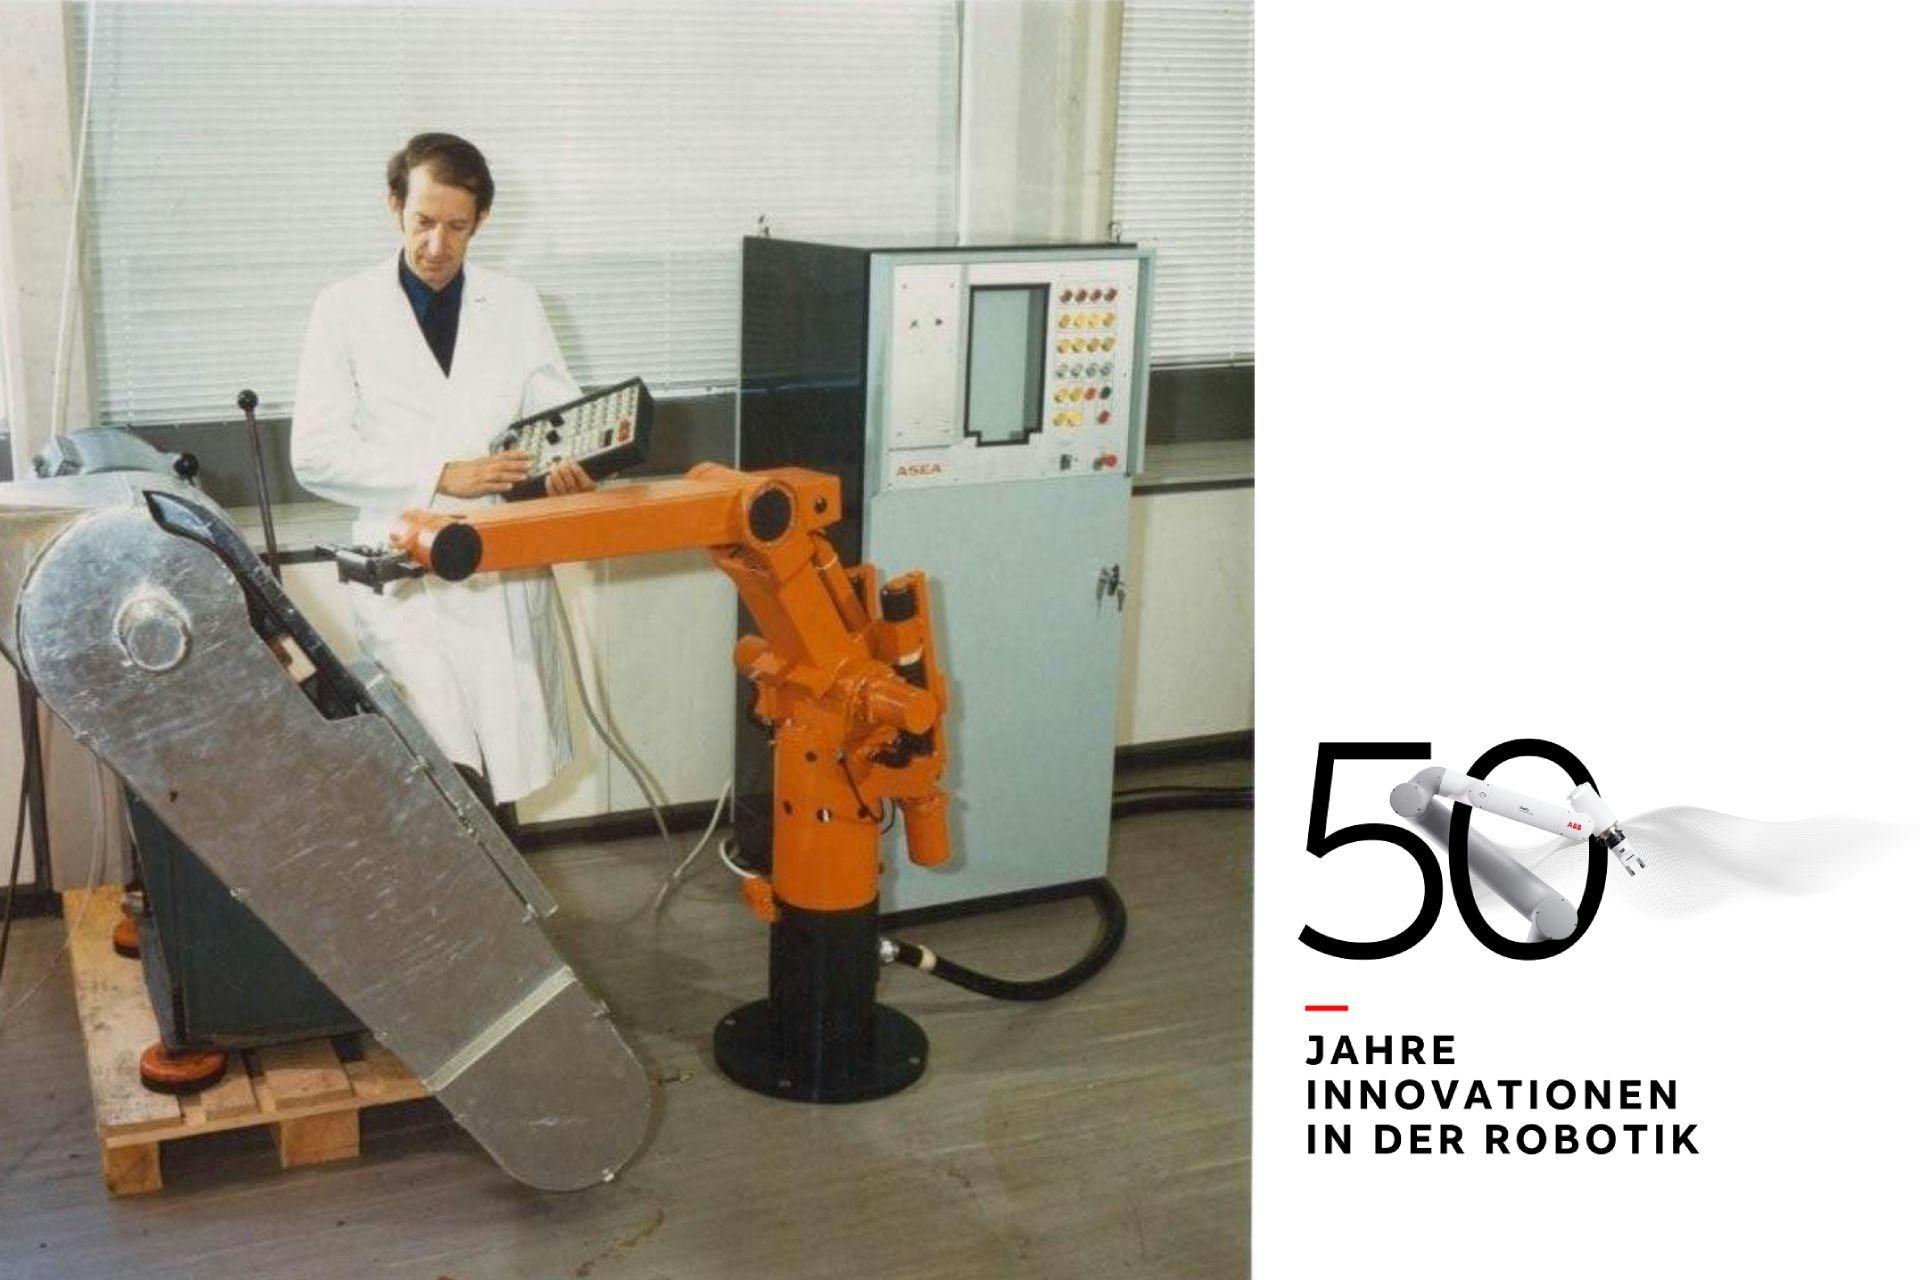 Björn Weichbrodt, der Entwickler des IRB 6, des ersten elektrischen Industrieroboters der Welt für ASEA/ABB.